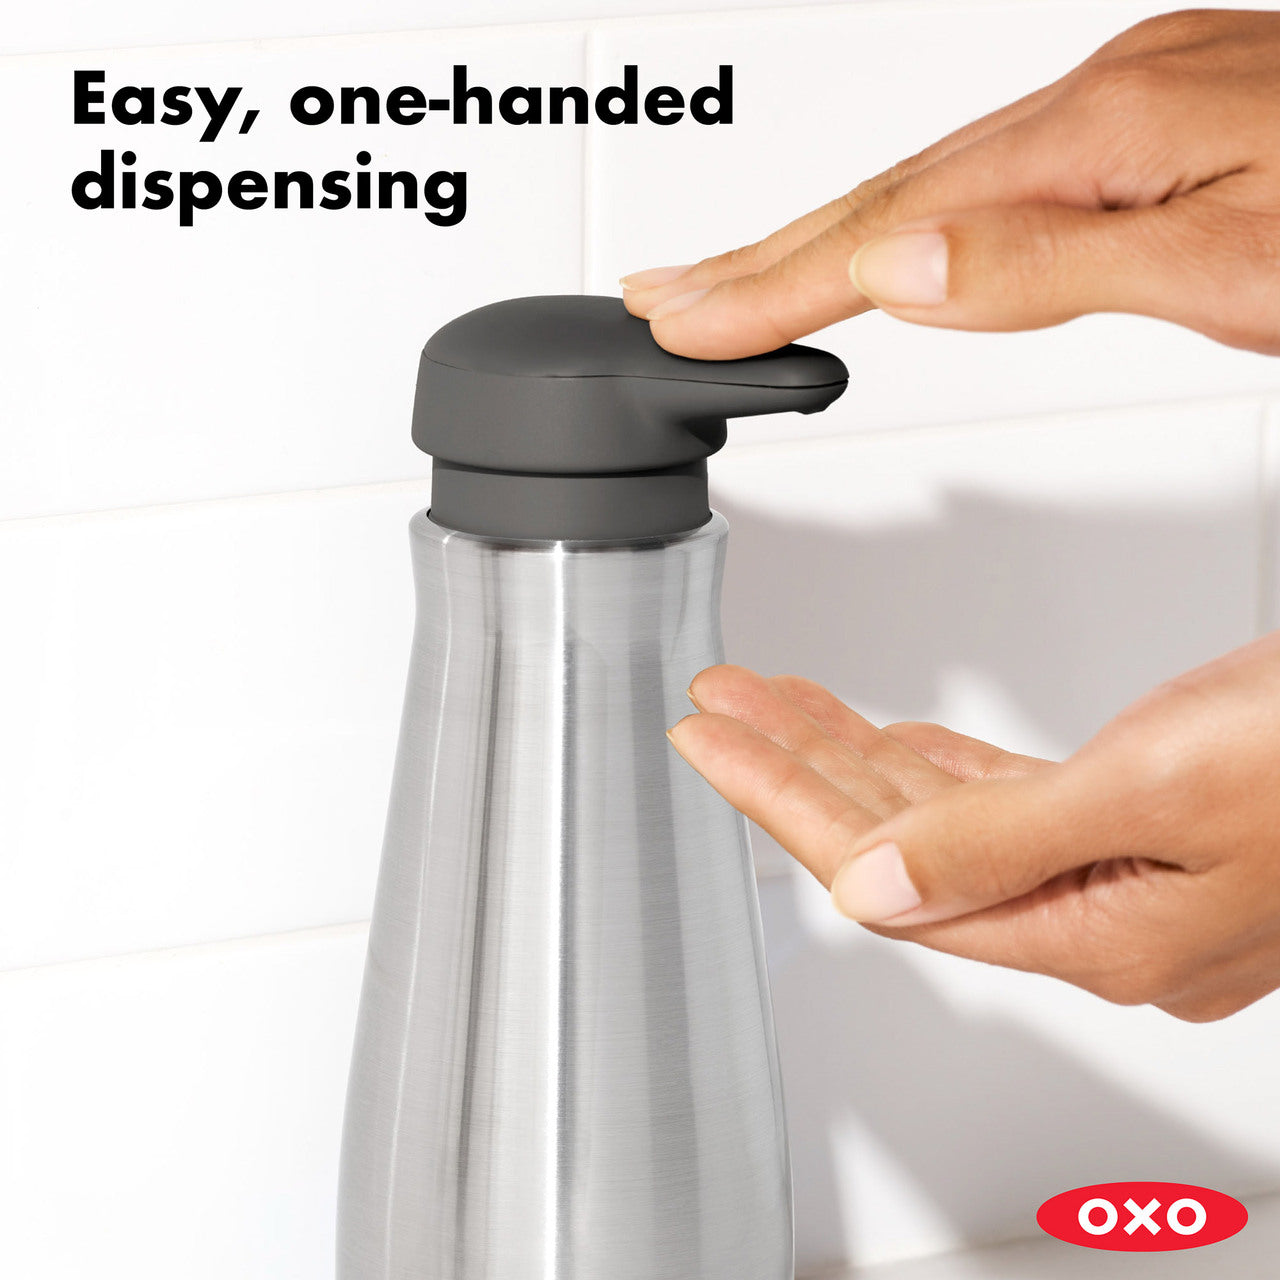 OXO Good Grips Soap Dispenser